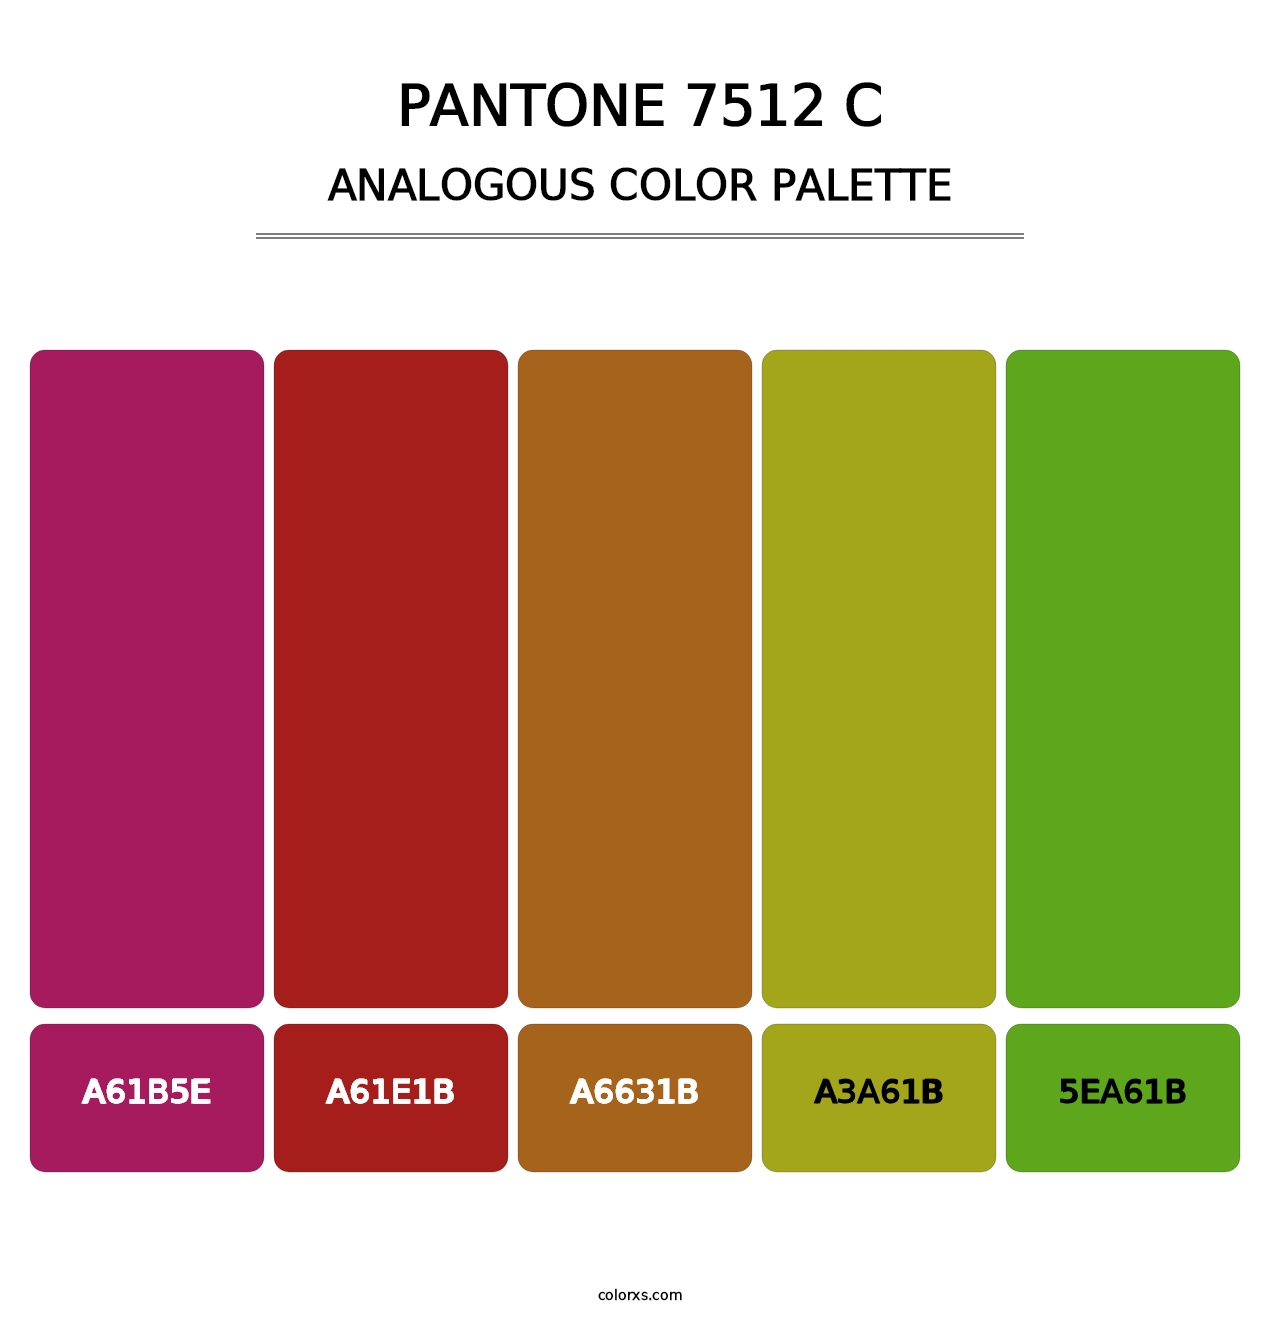 PANTONE 7512 C - Analogous Color Palette